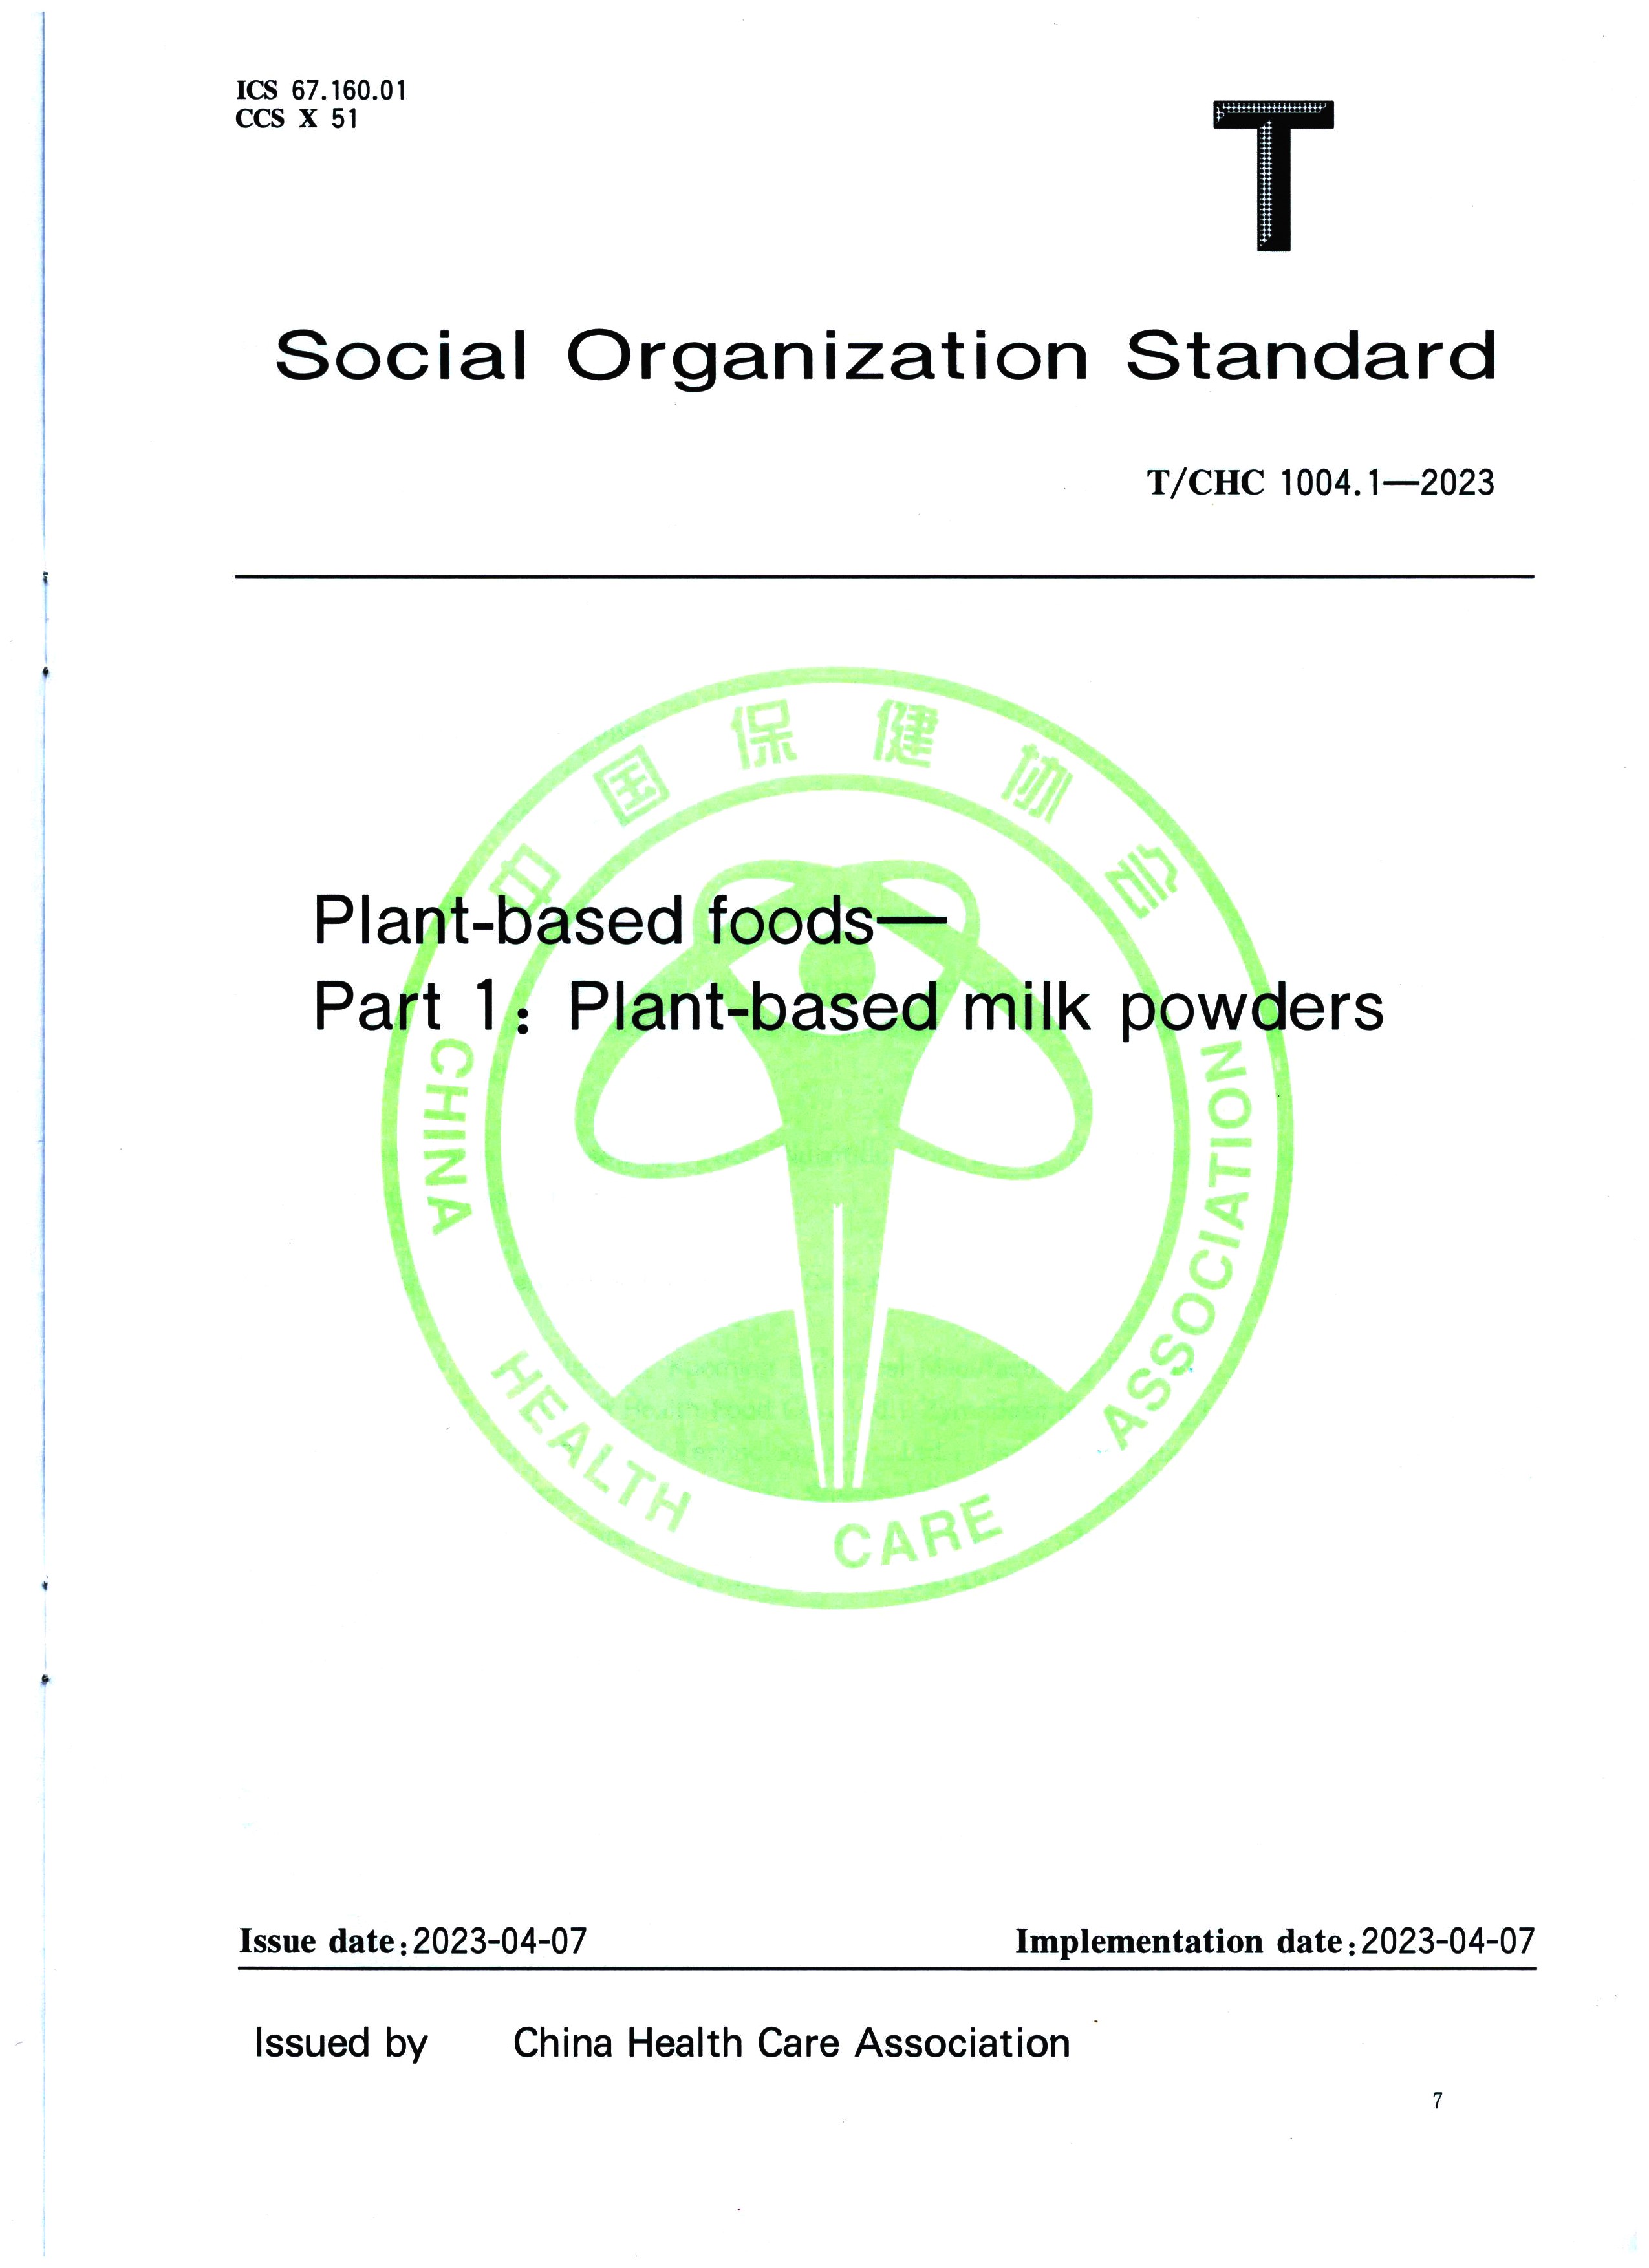 中国標準出版局発行の「植物性食品パート1 植物性粉乳」のグループ基準が正式に発表されました